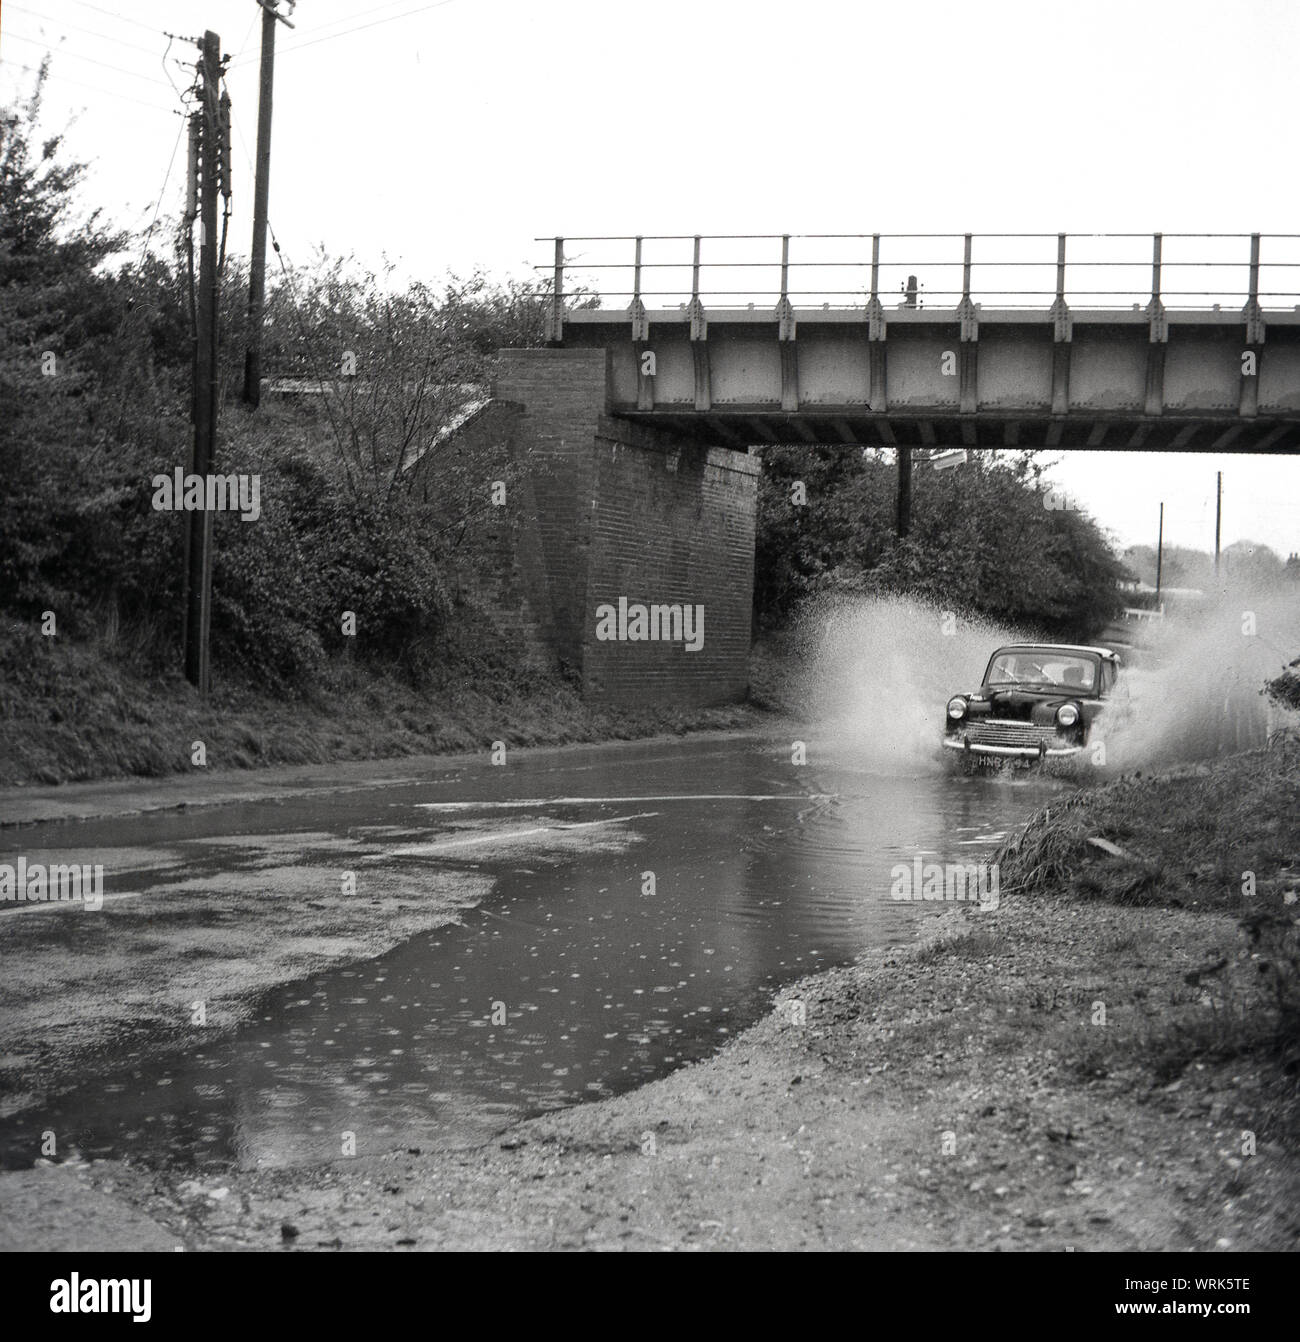 1967, historische, überflutete Straße, Auto der Ära unter einer Brücke durch einen großen Pool von Wasser auf einer Straße, wo die Kanalisation übergelaufen sind. Risborough, England, UK. Stockfoto